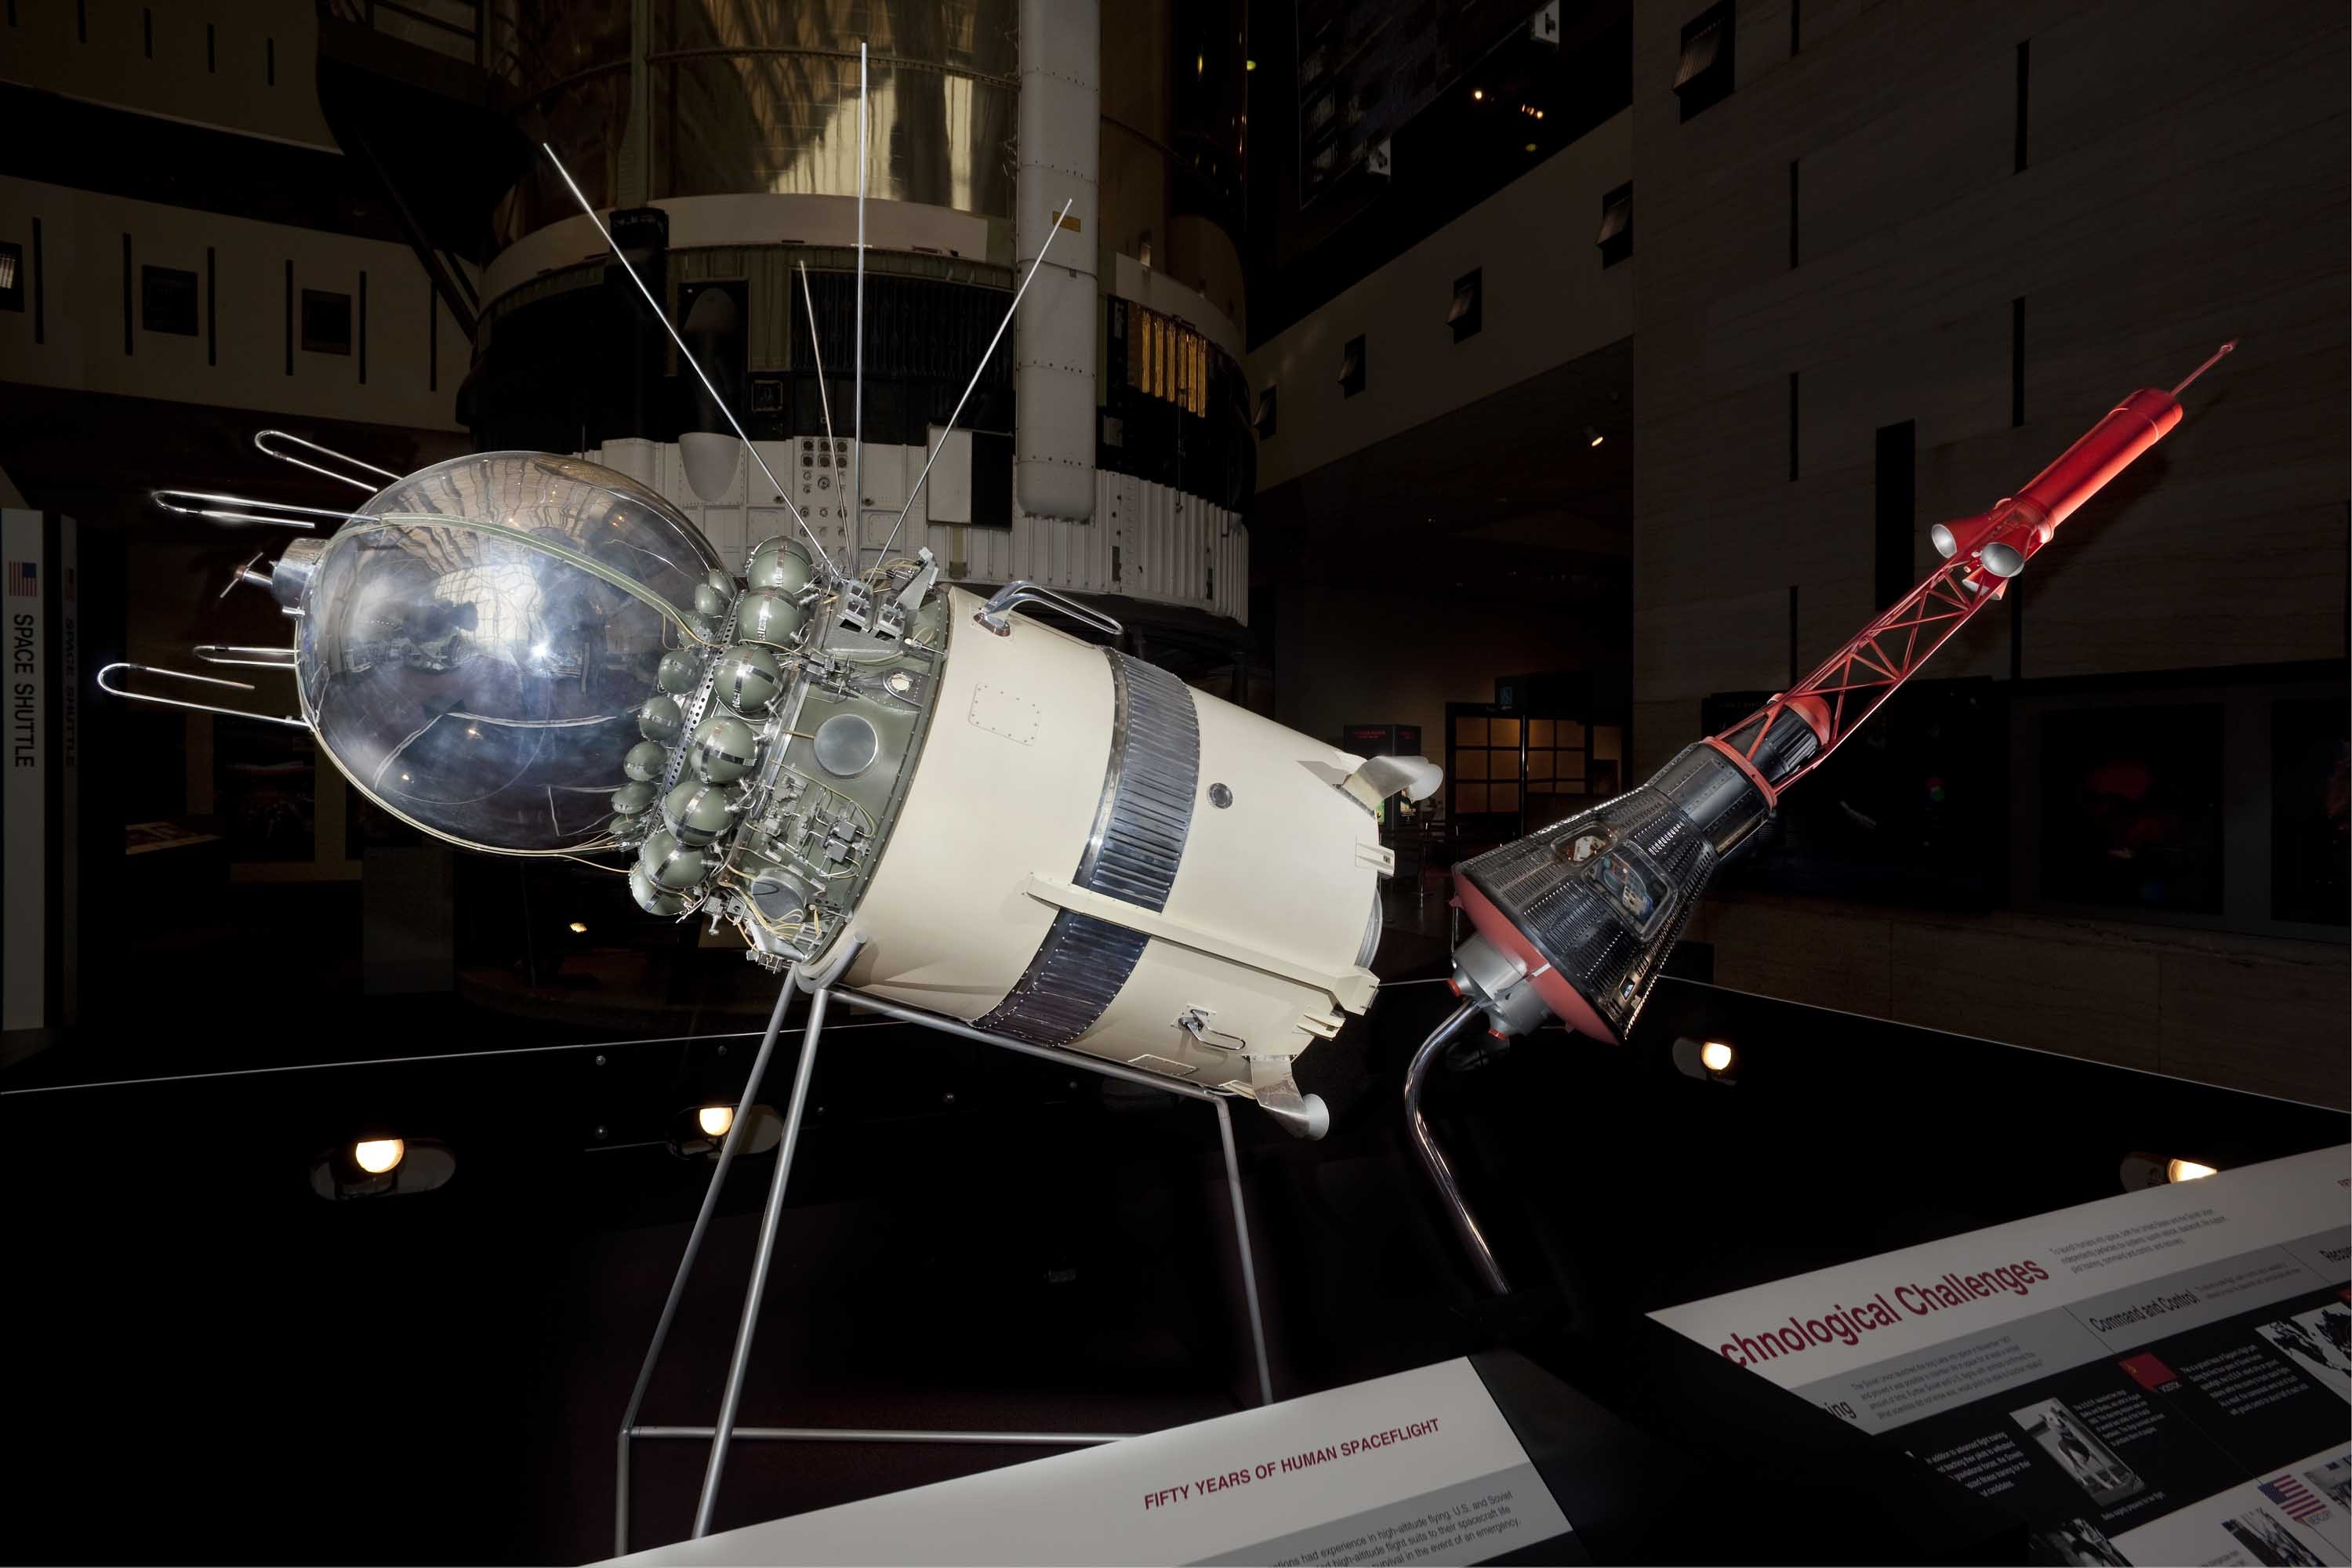 Первые межпланетные полеты. Первый пилотируемый космический корабль Восток-1. Восток-3 пилотируемый космический корабль. Корабль Восход 1. Спутник Восток 1.